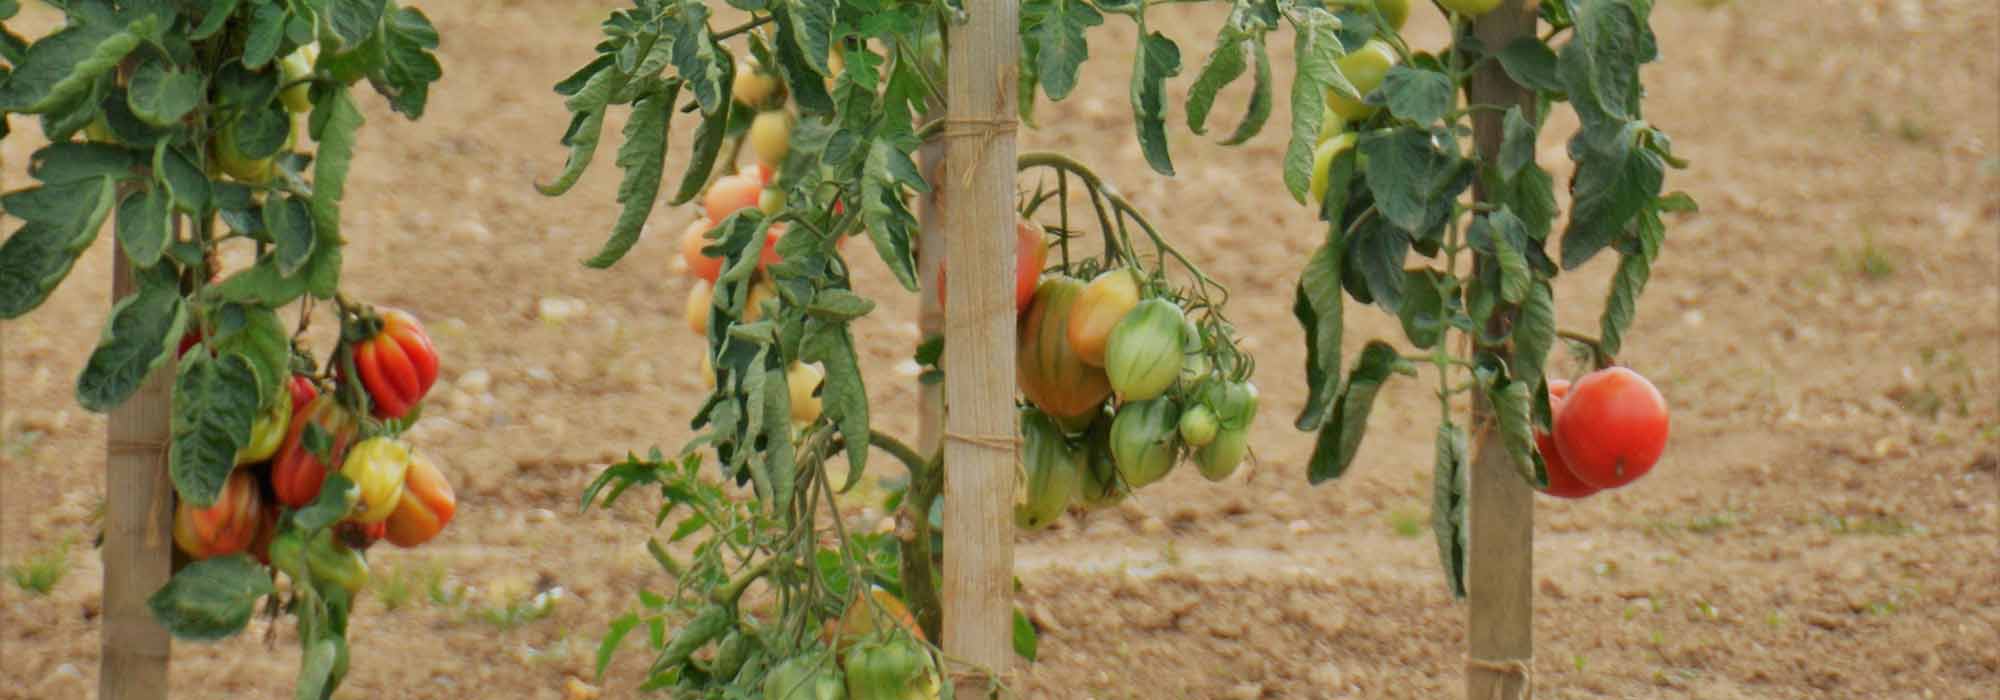 Fabriquer des tuteurs à tomates